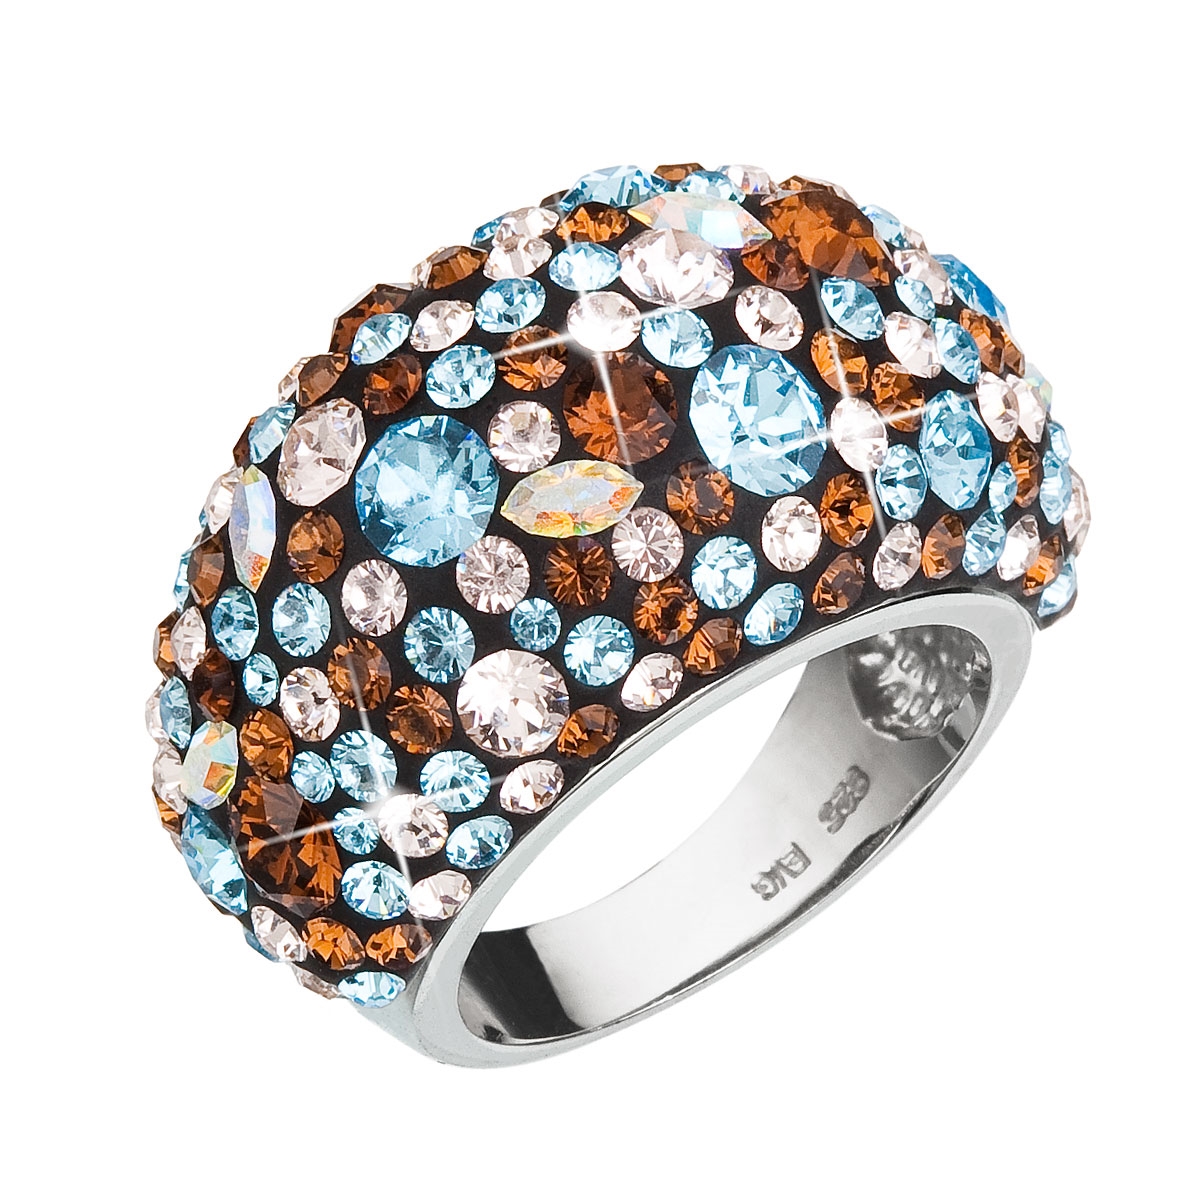 Strieborný prsteň s kryštálmi Crystals from Swarovski ®, Aqua